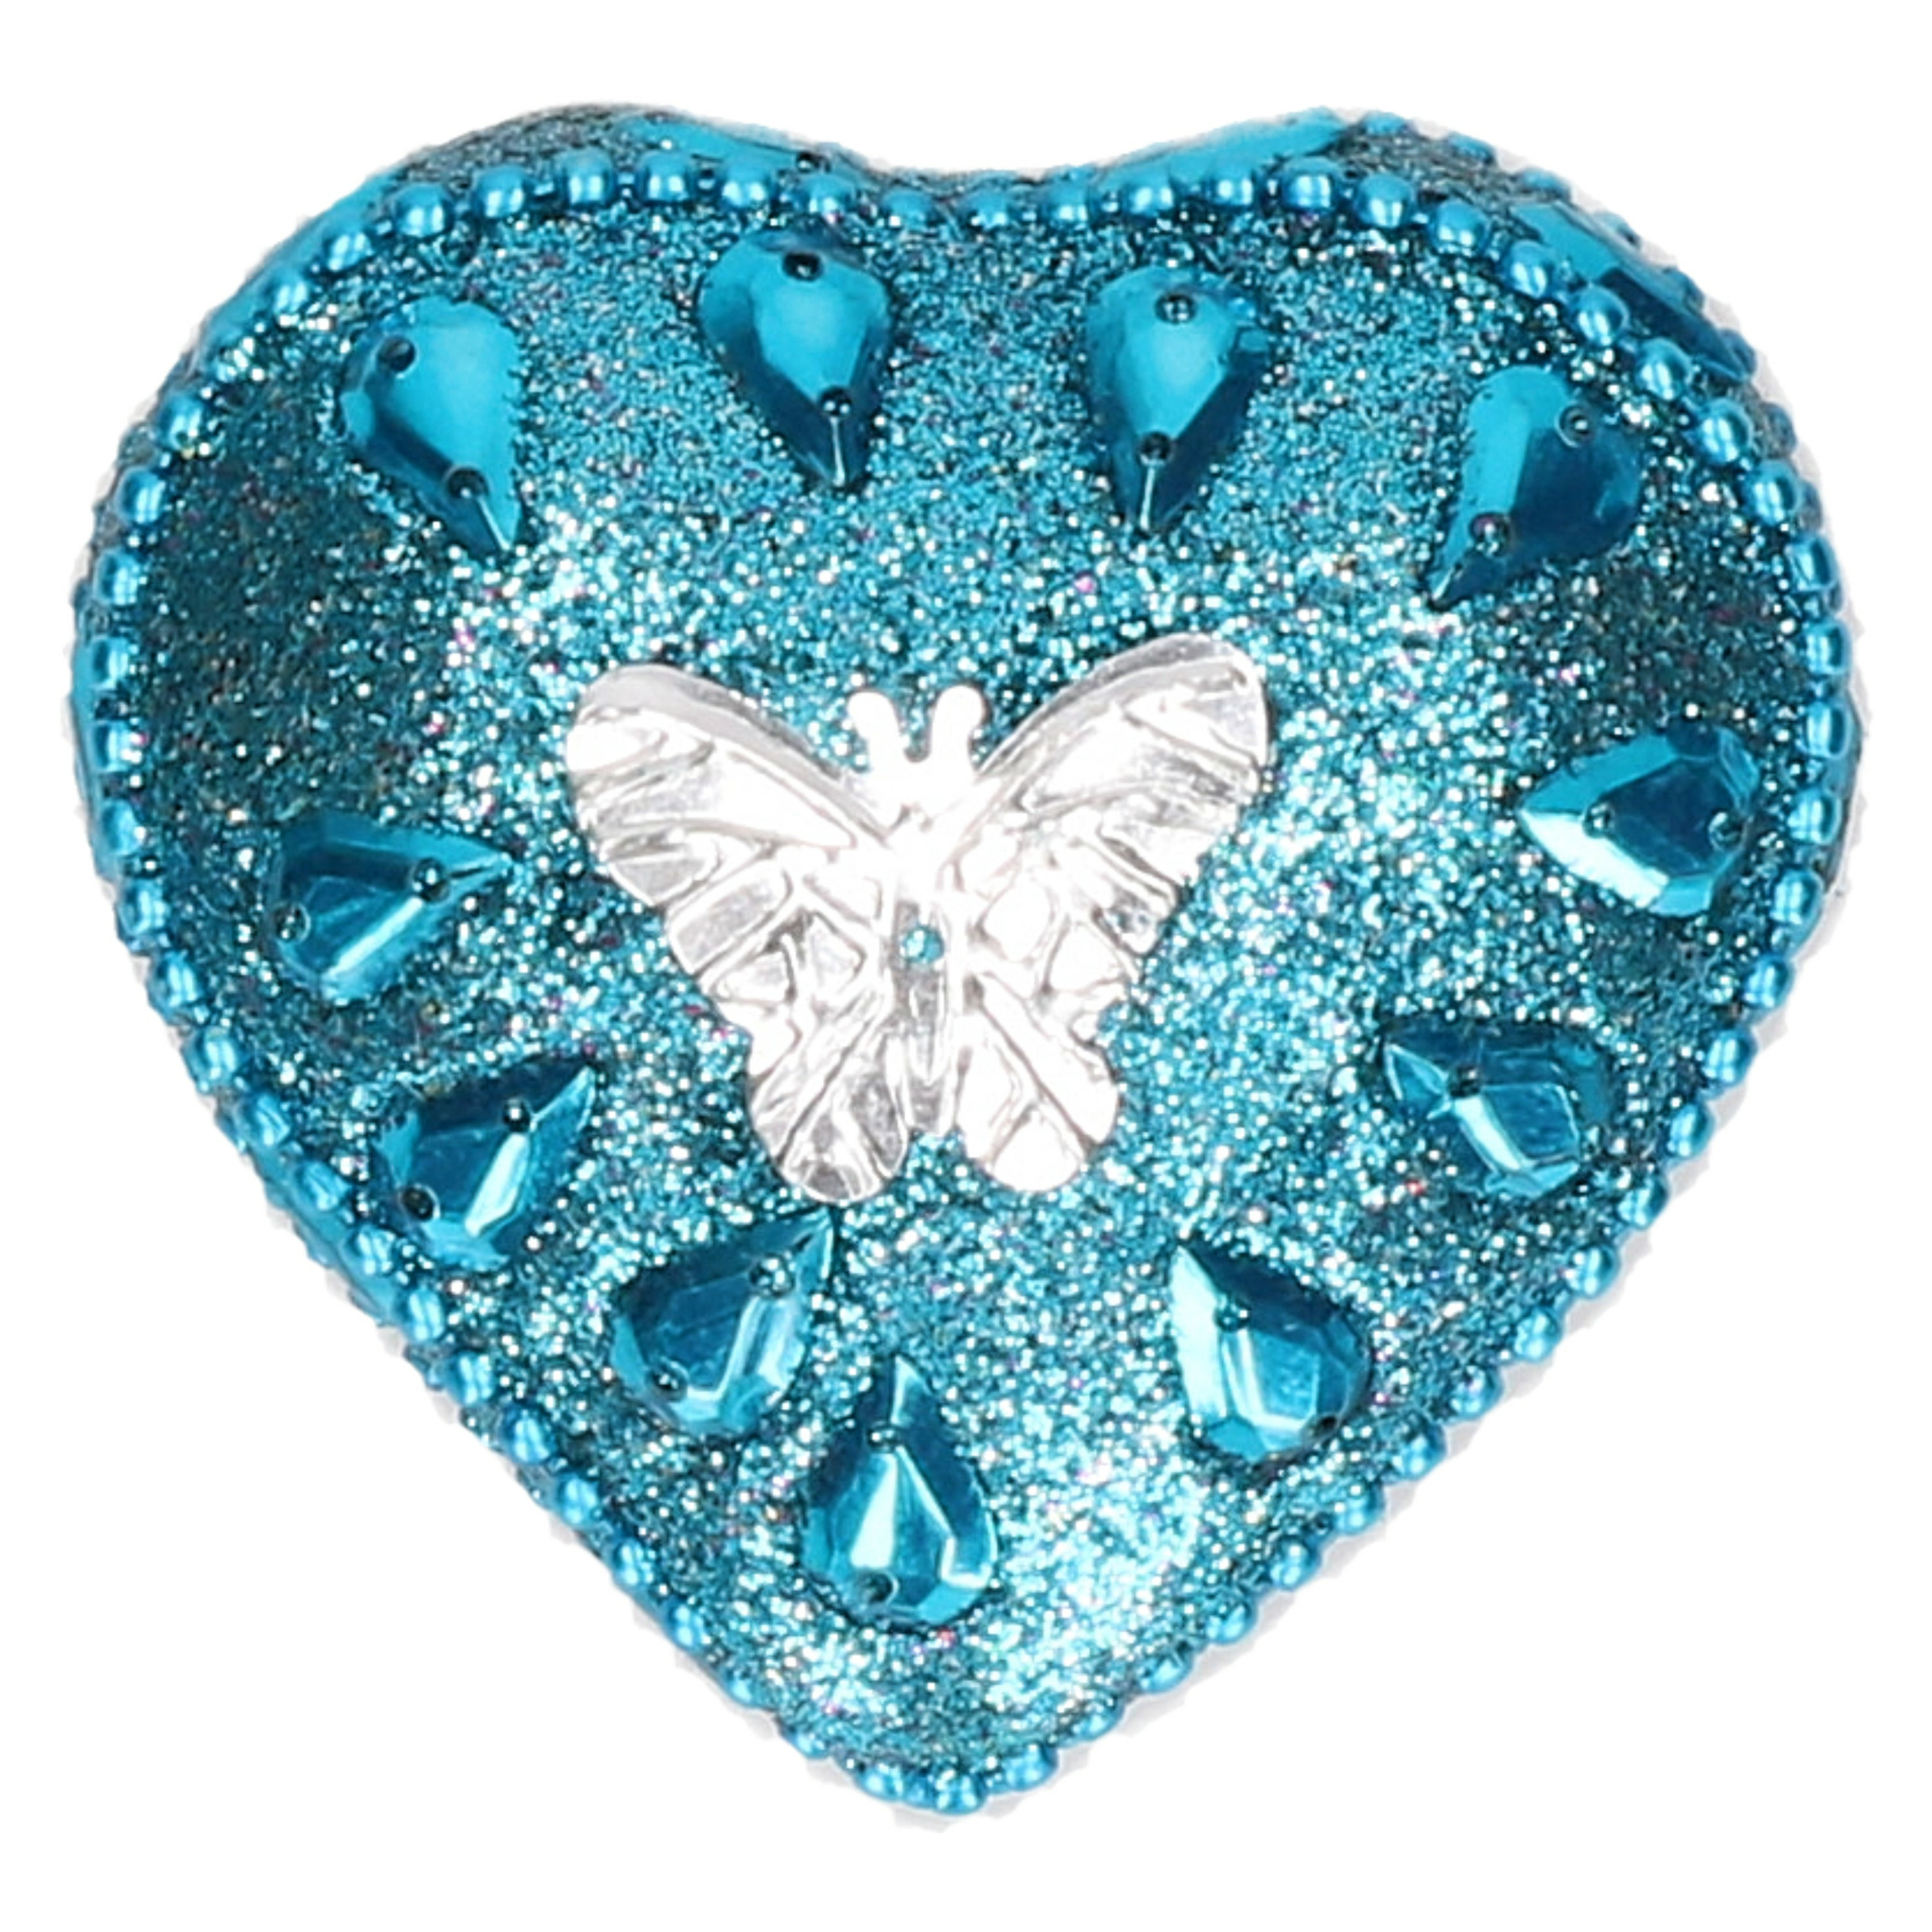 Tandendoosje - hartje/vlinder - turquoise blauw/zilver - kunststof - 6 cm -